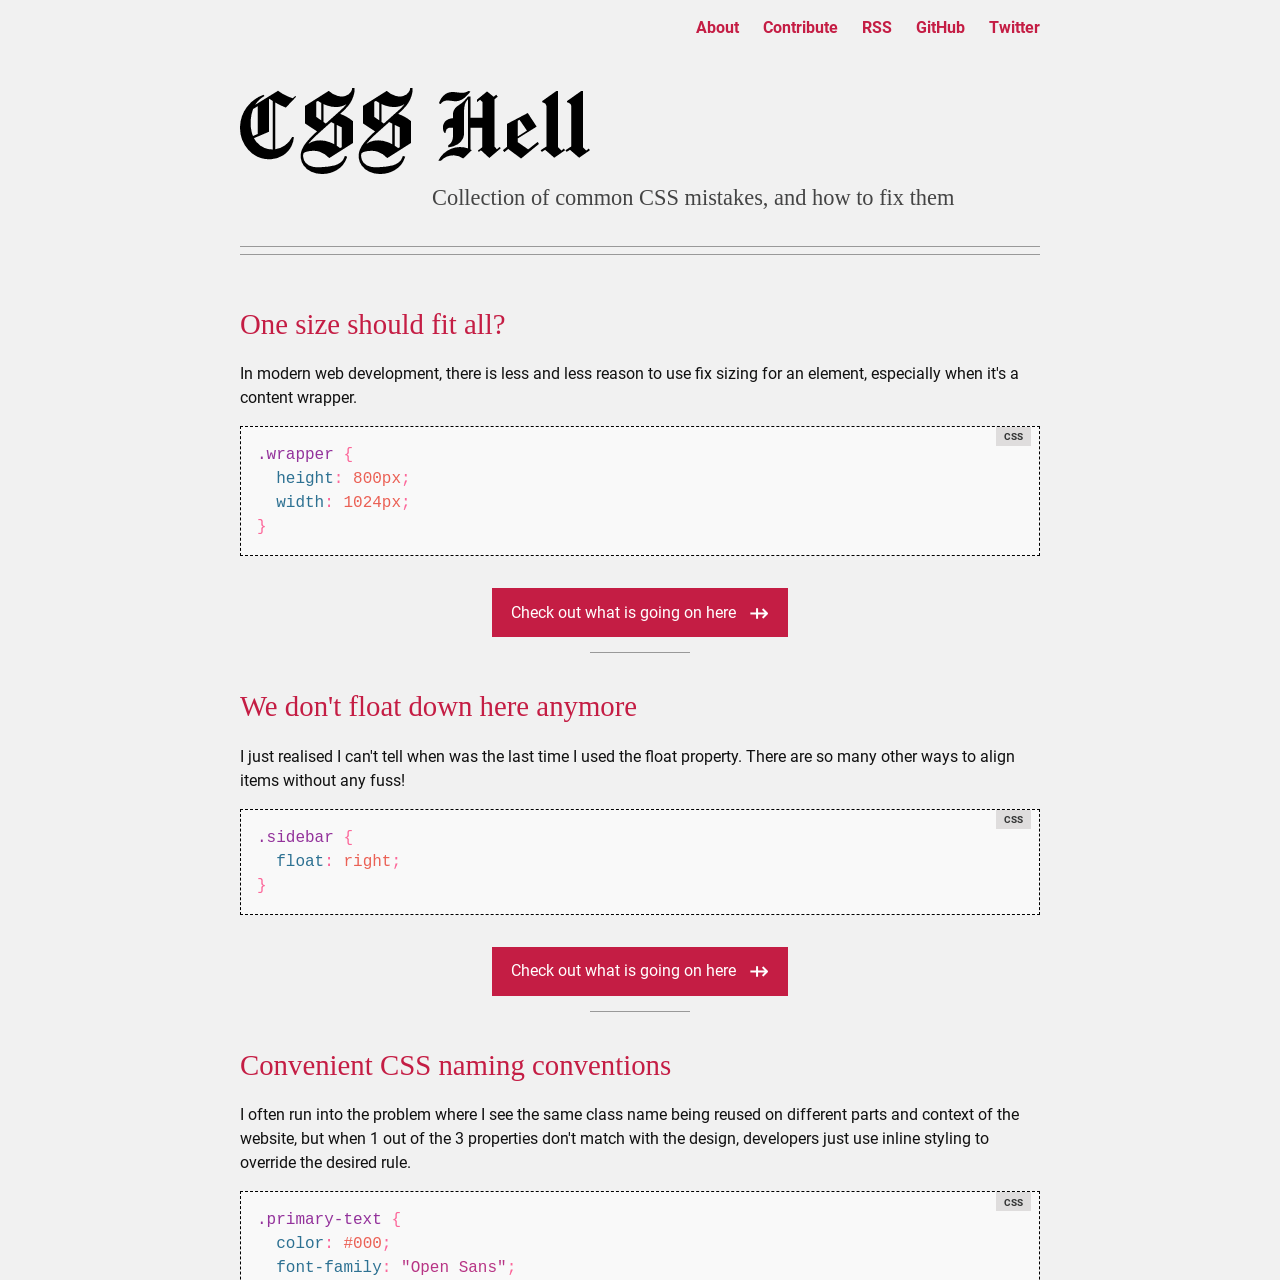 Screenshot of CSS Hell website